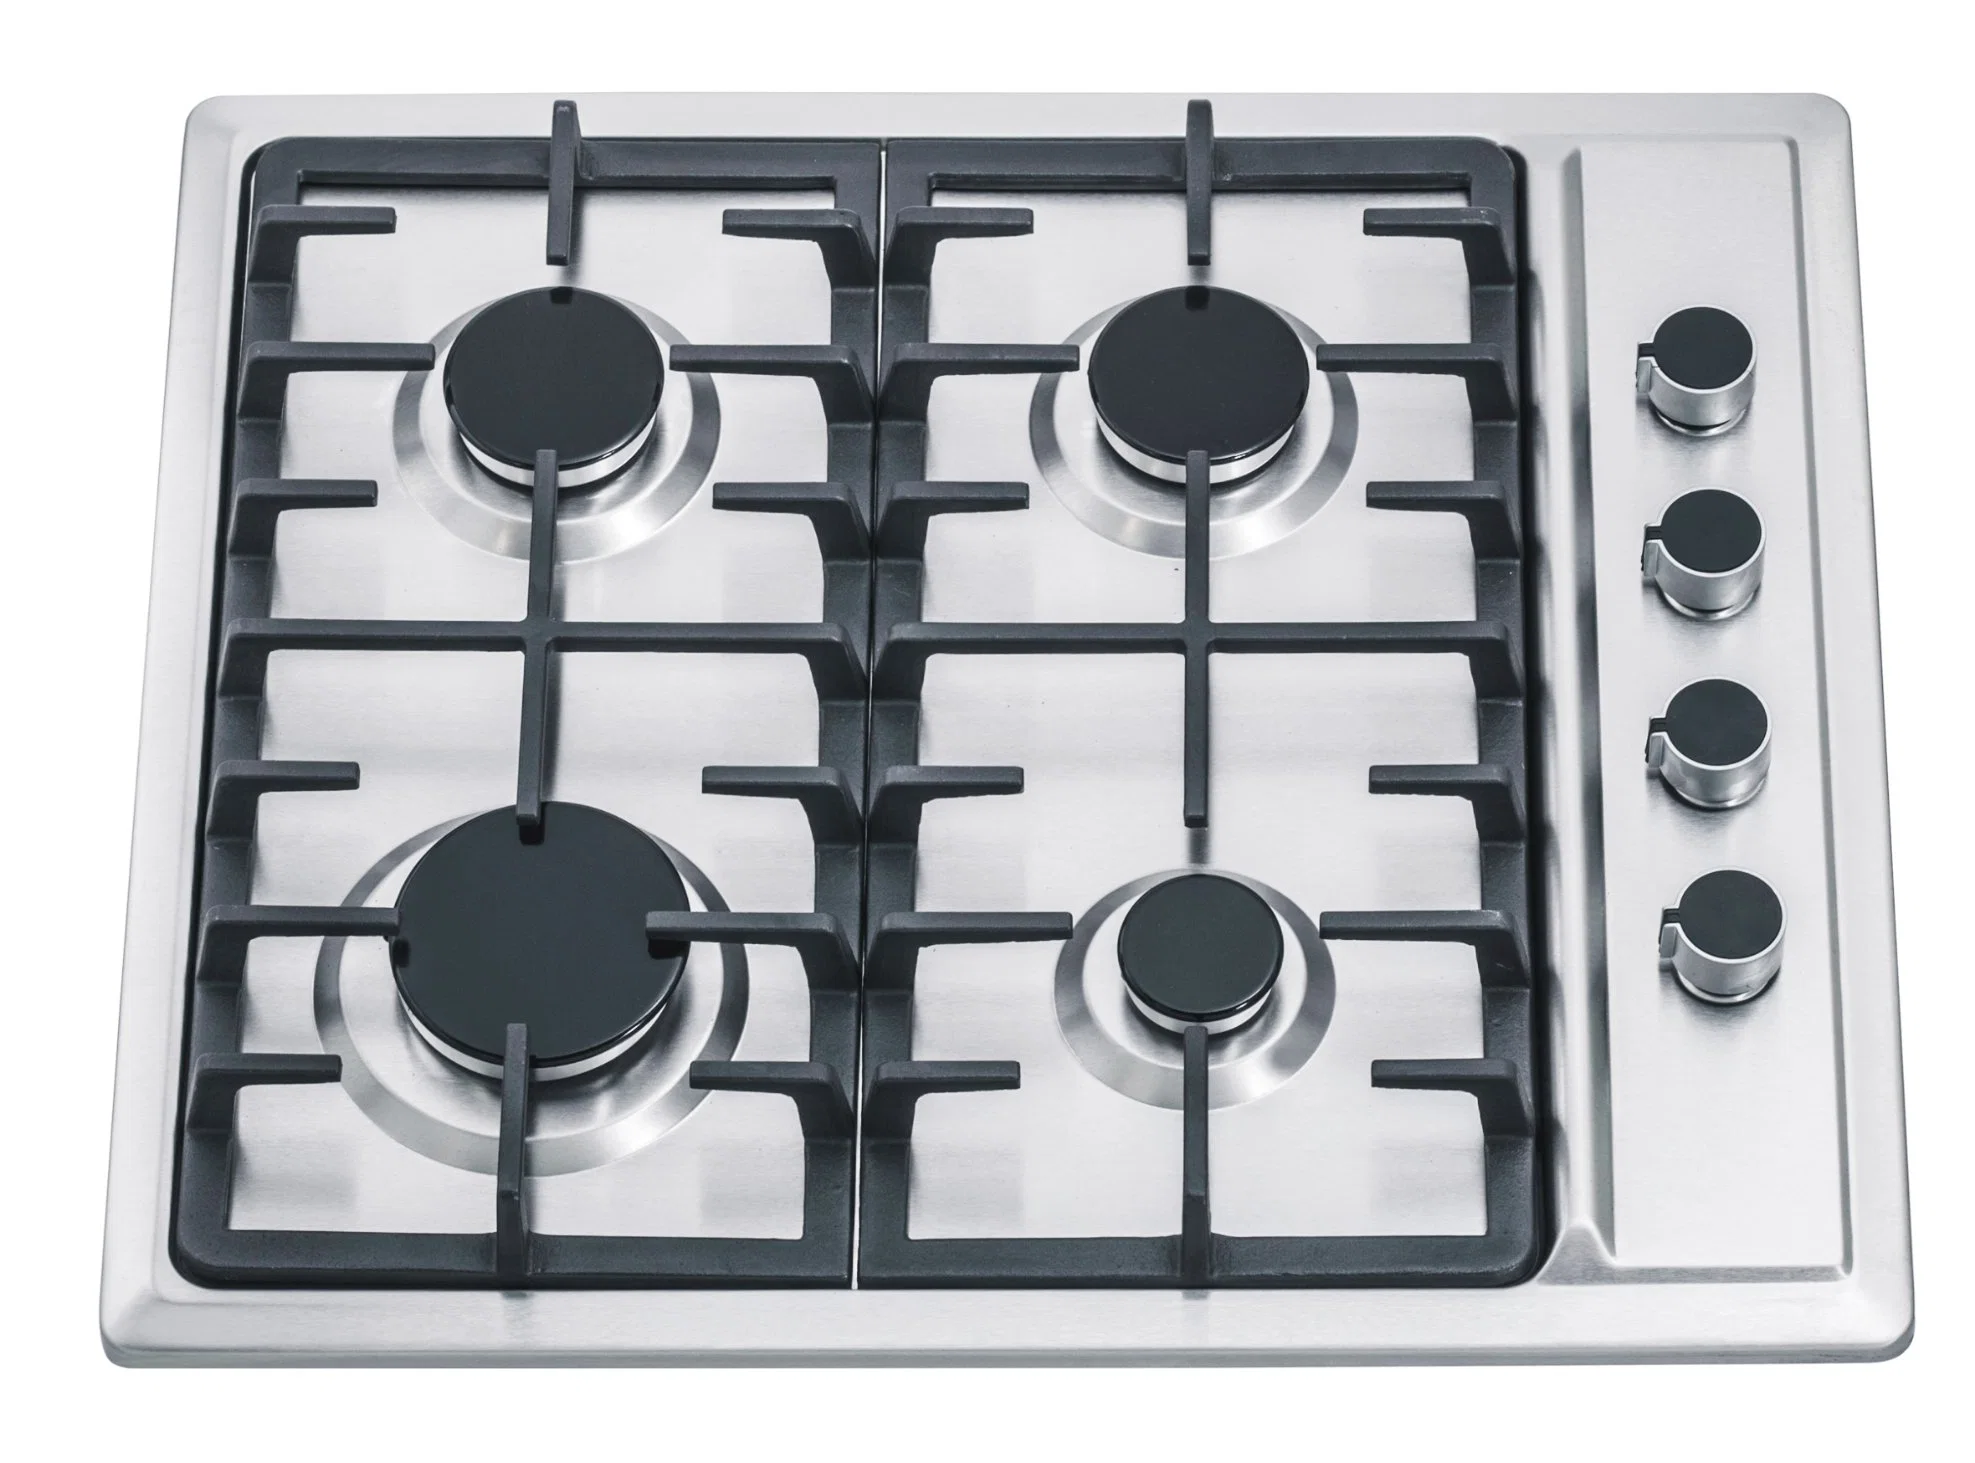 New Design Italy Sabaf Burner 4 Burners Home Kitchen Gas Stove (JZS54034-DCC)